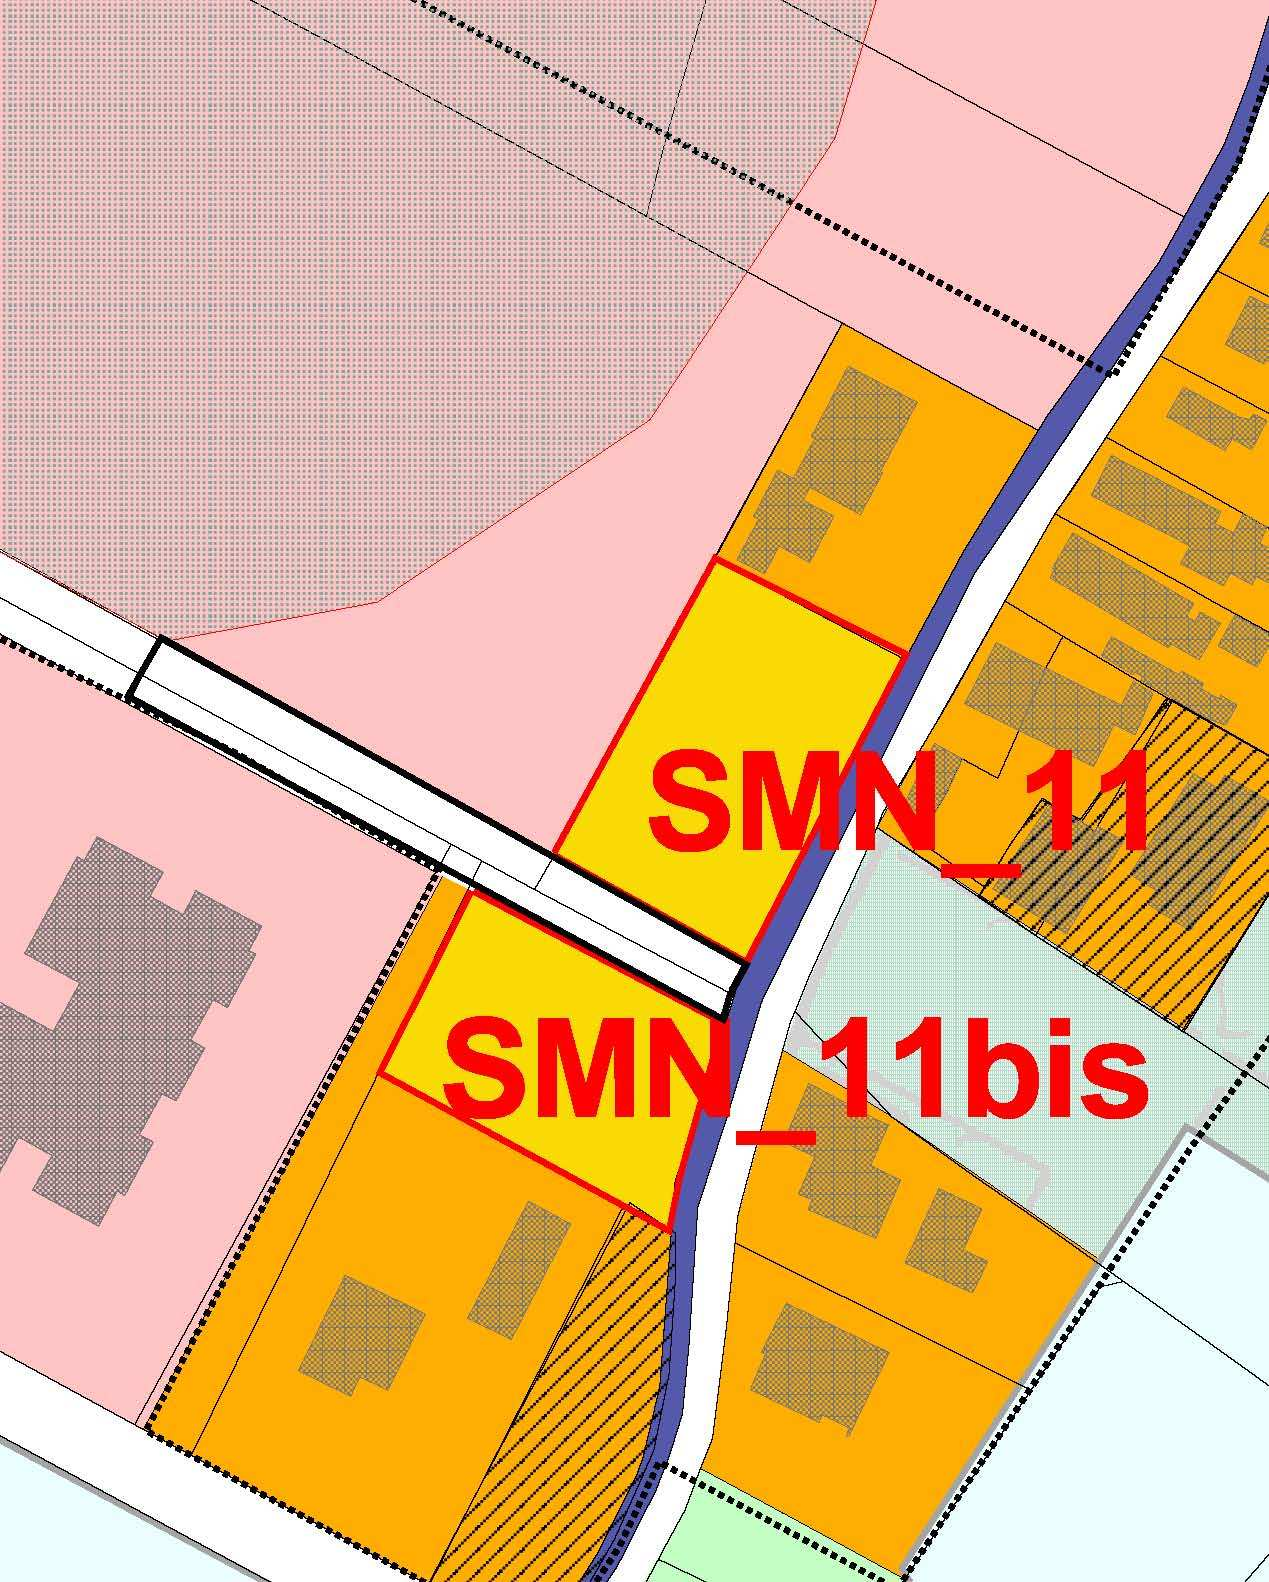 SMN_11 bis Foglio 11; particella 223 cartografia SUPERFICIE TERRITORIALE SCHEDA mq 1116 SUPERFICIE FONDIARIA DI RIFERIMENTO mq 1116 mq 1.